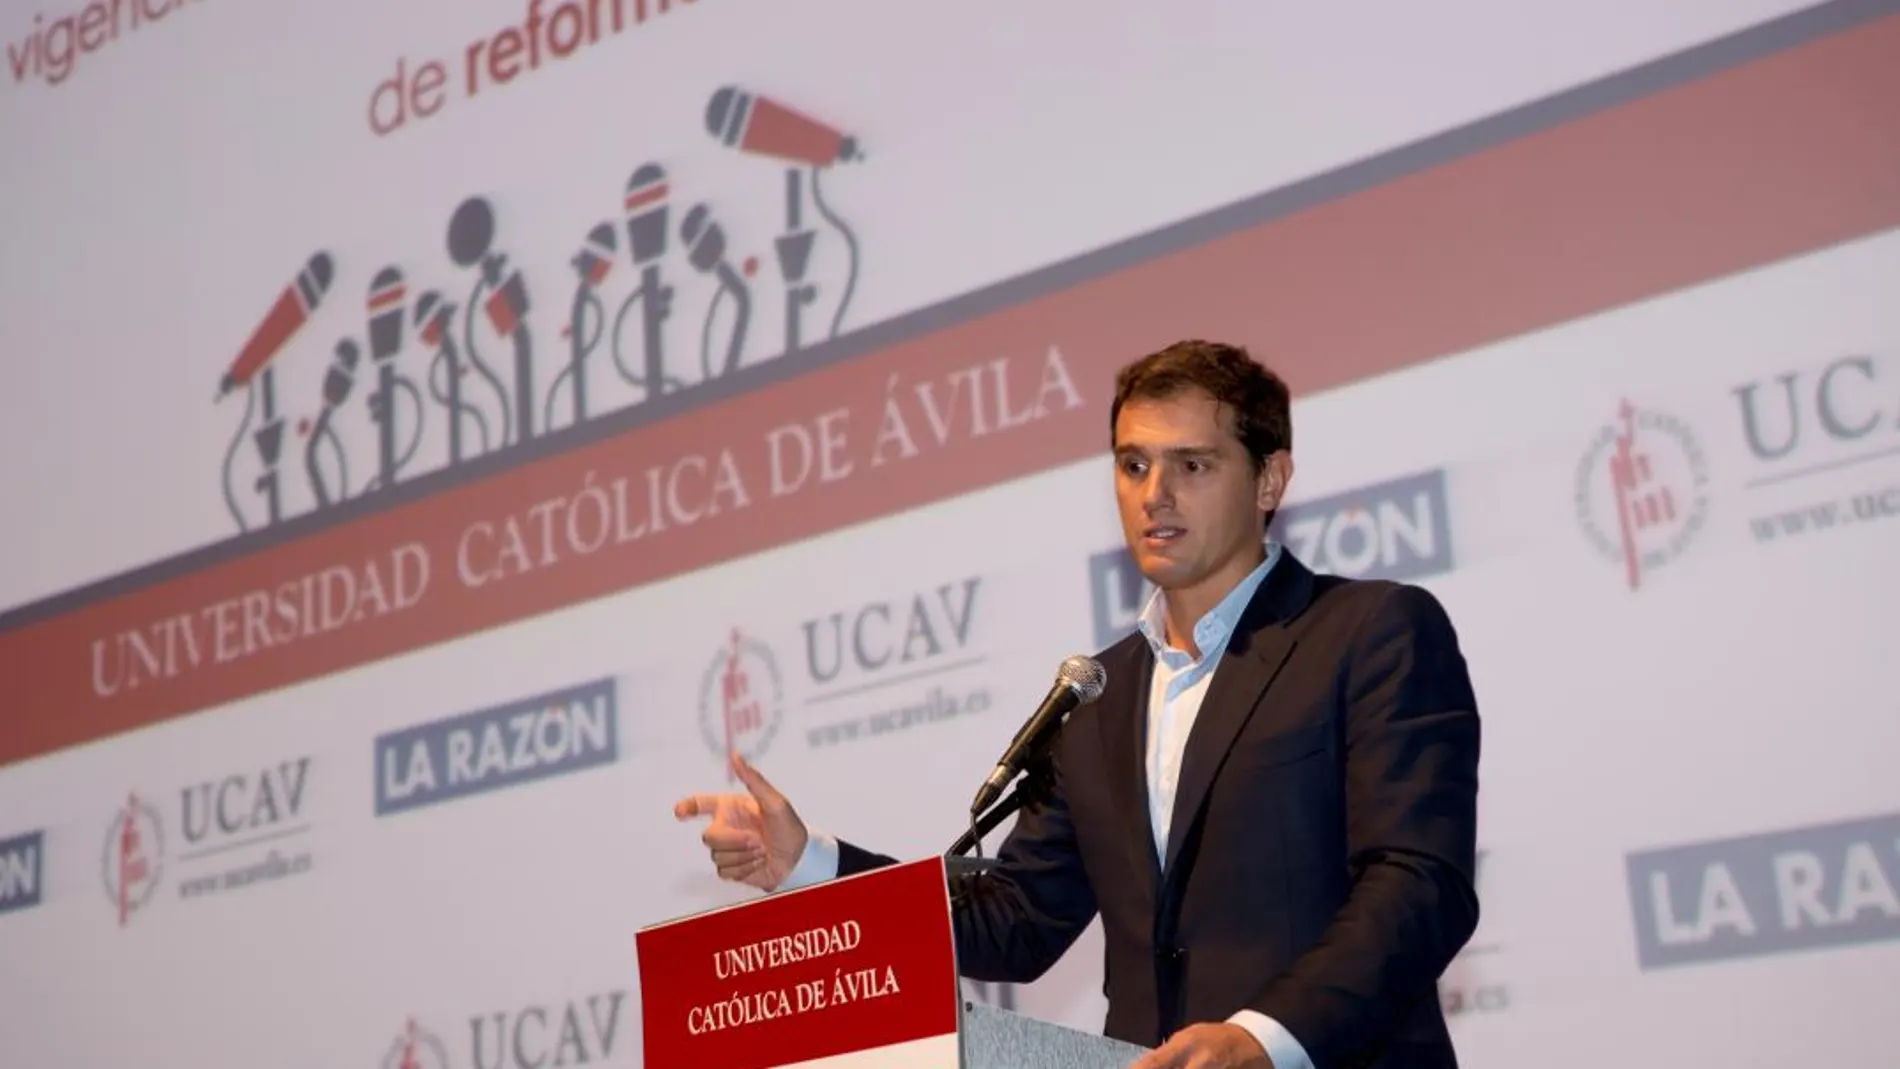 El presidente de Ciudadanos, Albert Rivera, participa en la Escuela de Otoño, organizada por la Universidad Católica de Ávila (UCAV) y el diario La Razón